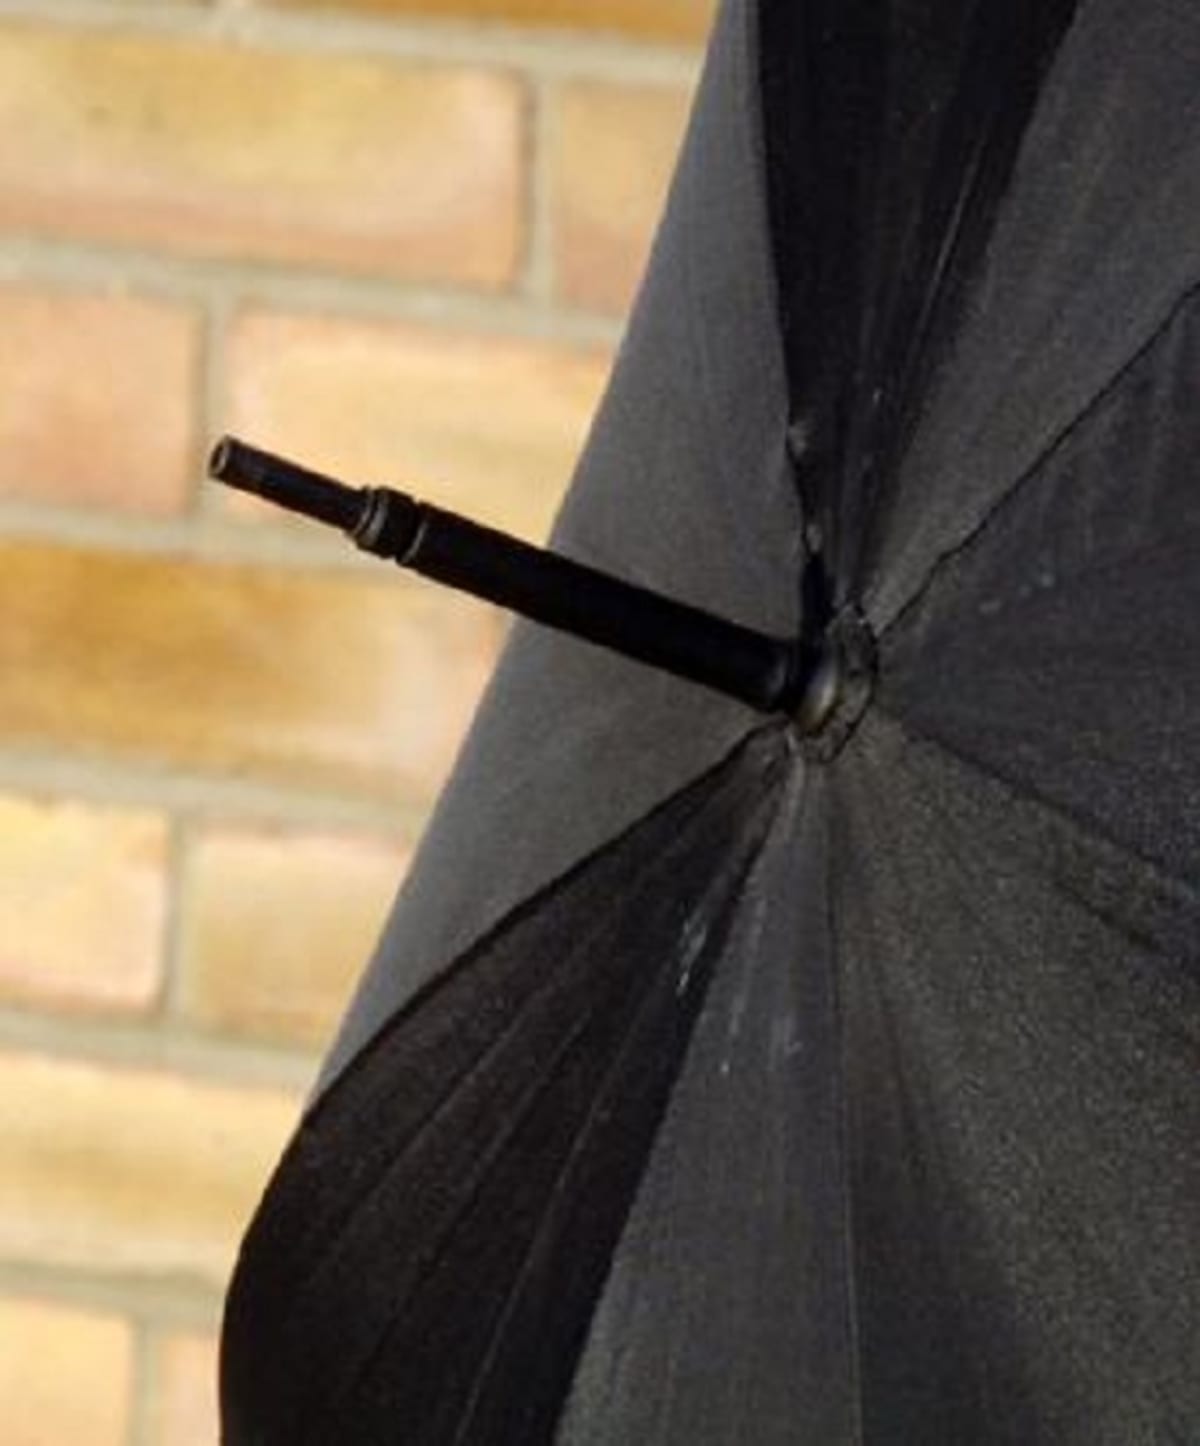 Deštník s ukrytým ostřím, pochopitelně otráveným. takhle byl v Londýně zabit jeden bulharský diplomat...